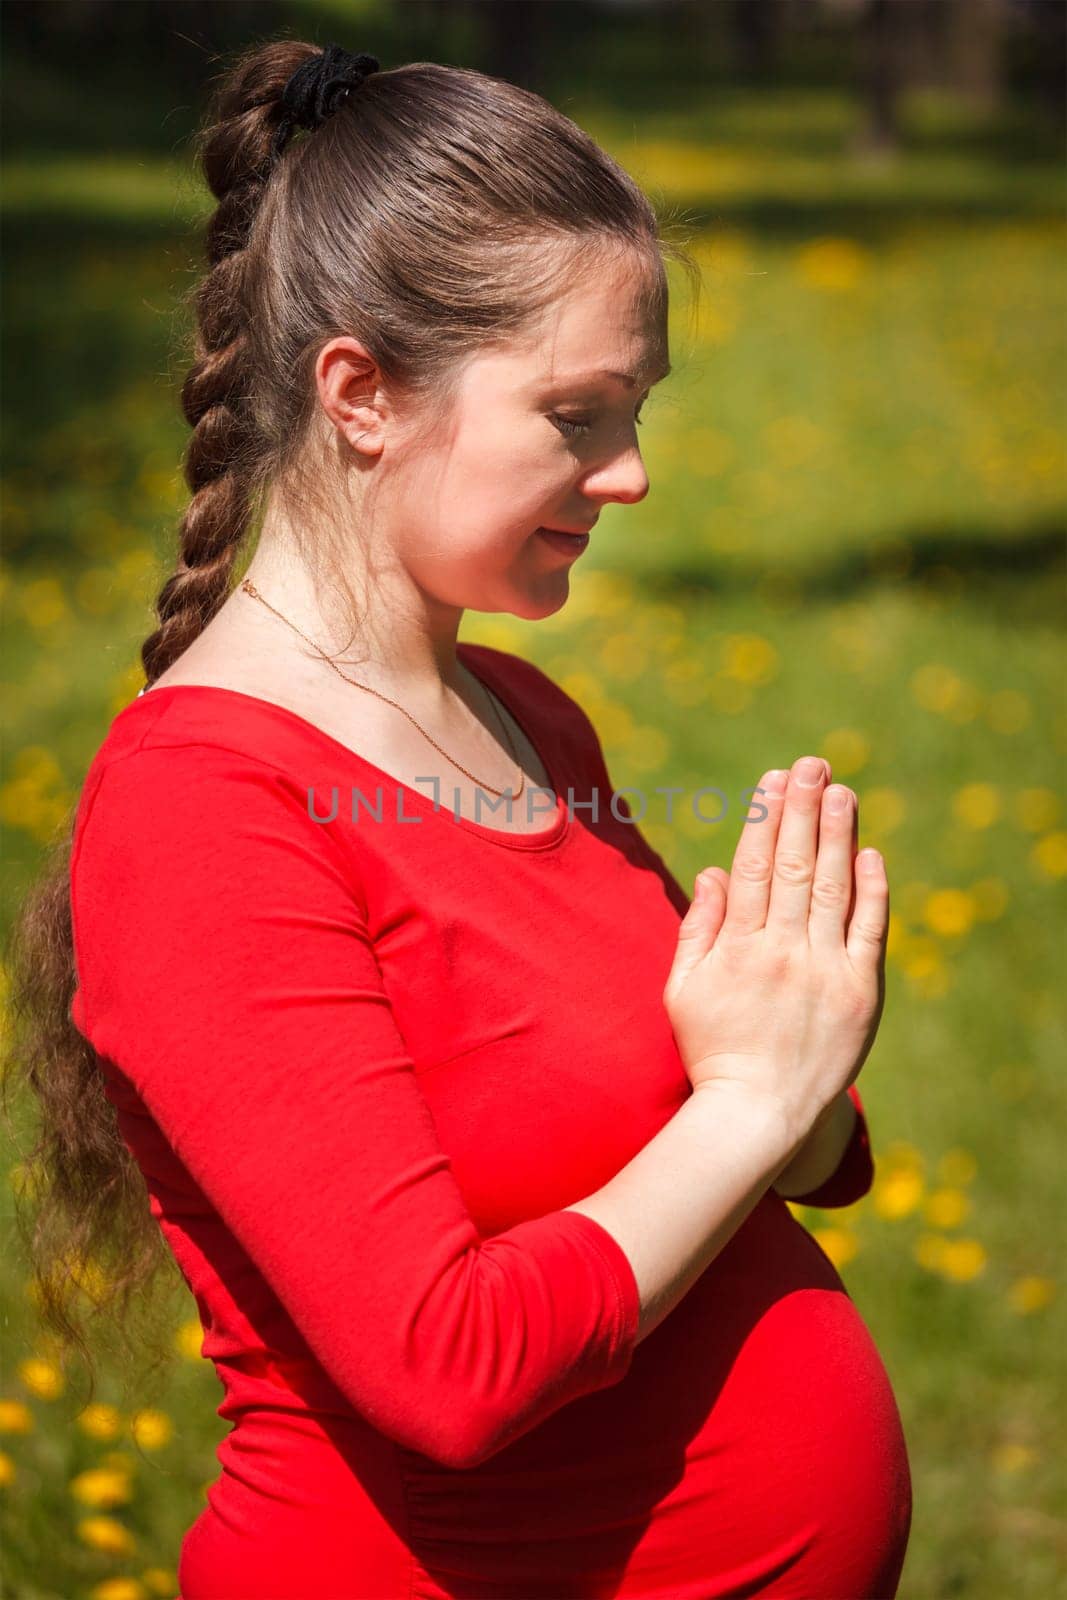 Pregnant woman doing asana Tadasana Mountain pose outdoors by dimol